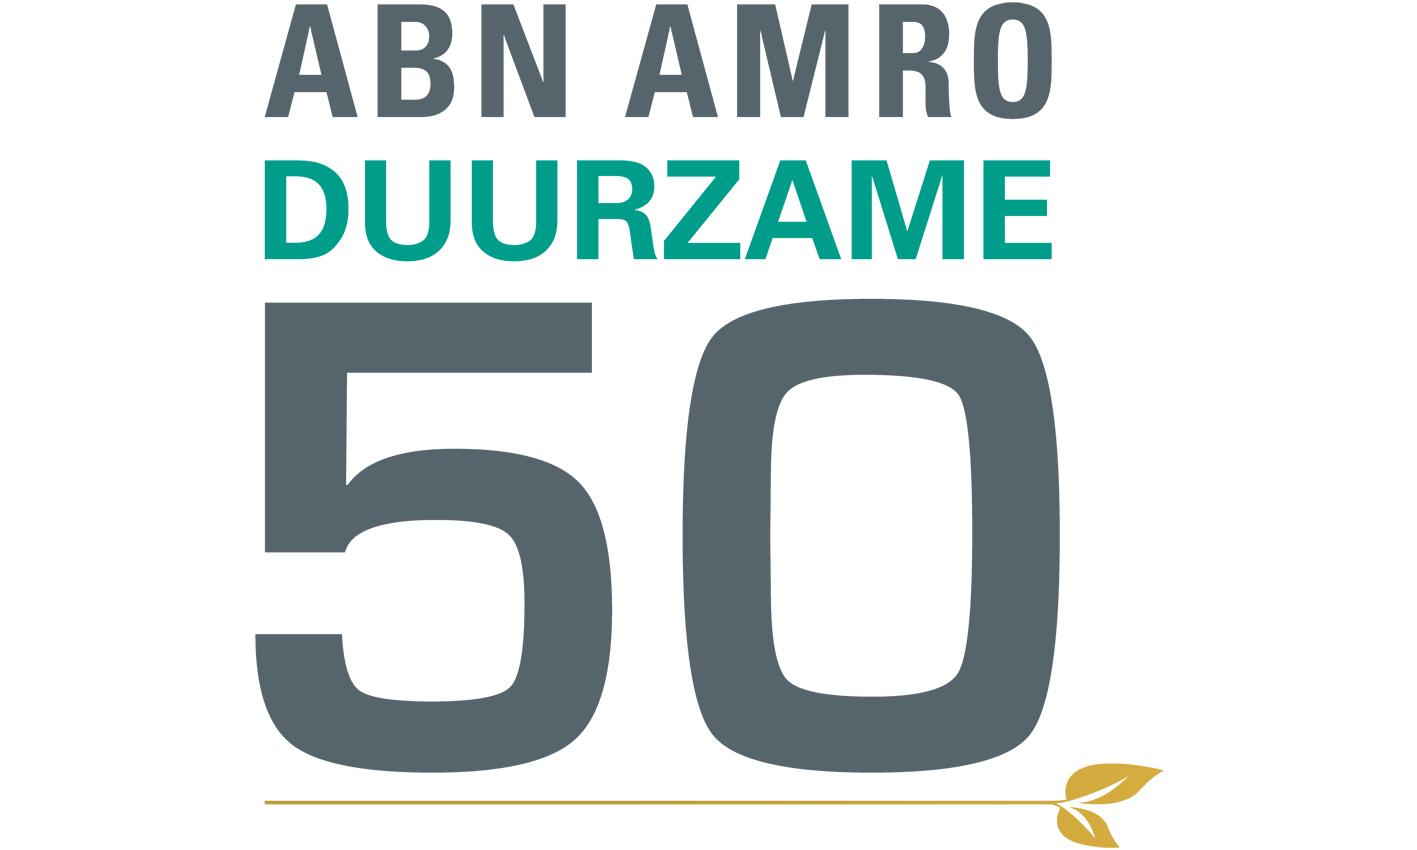 Logchies genomineerd voor de ABN AMRO Duurzame top 50 